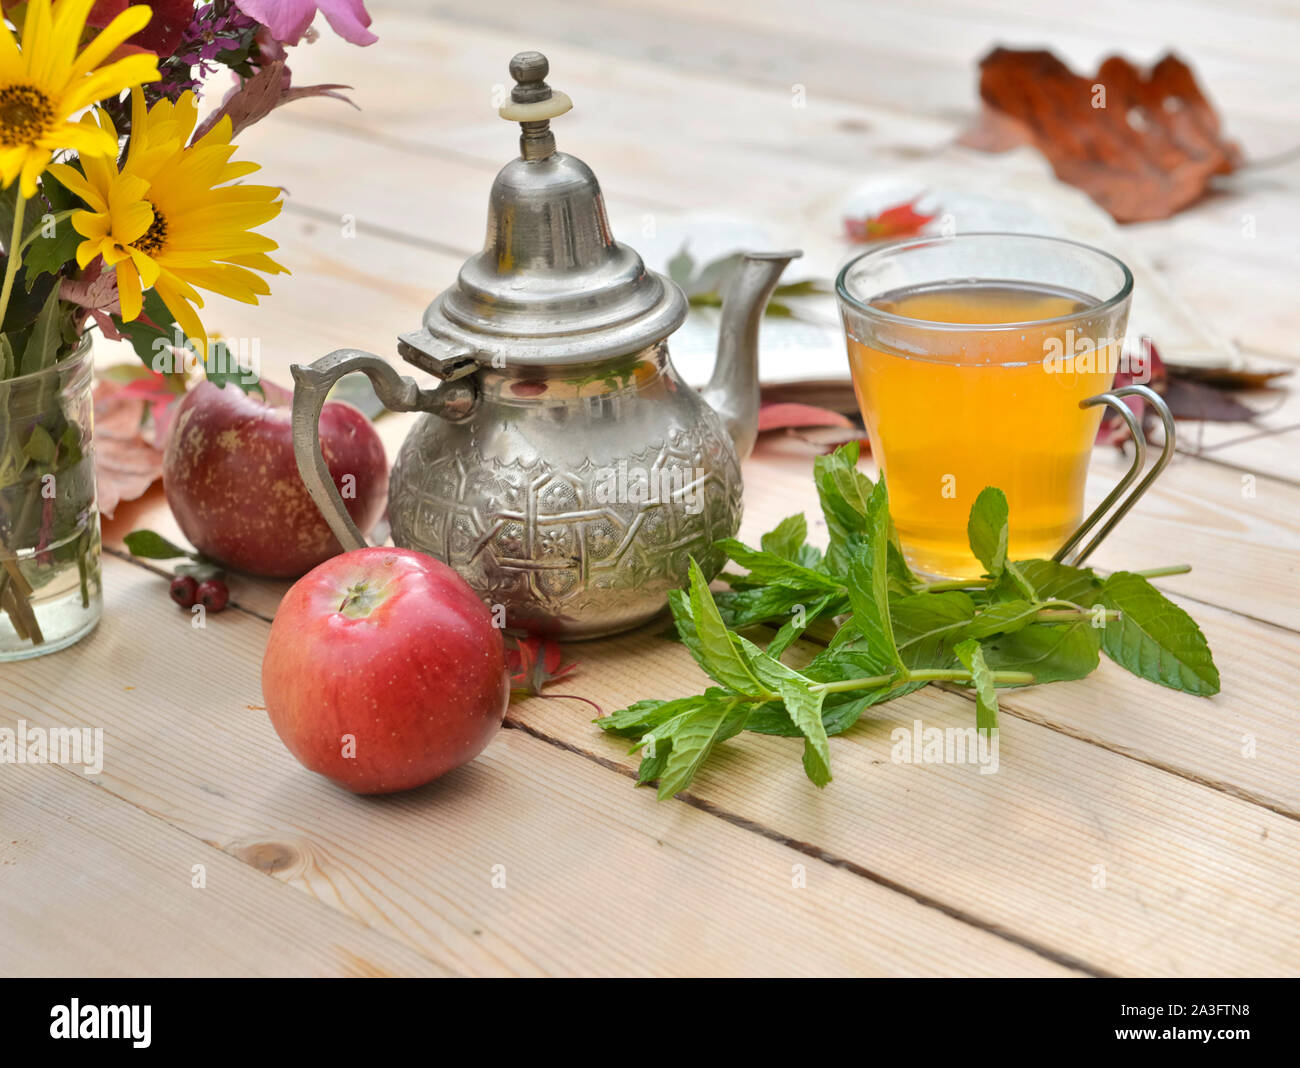 Tasse de thé avec des feuilles de menthe fraîche sur une table en bois dans un décor d'automne Banque D'Images